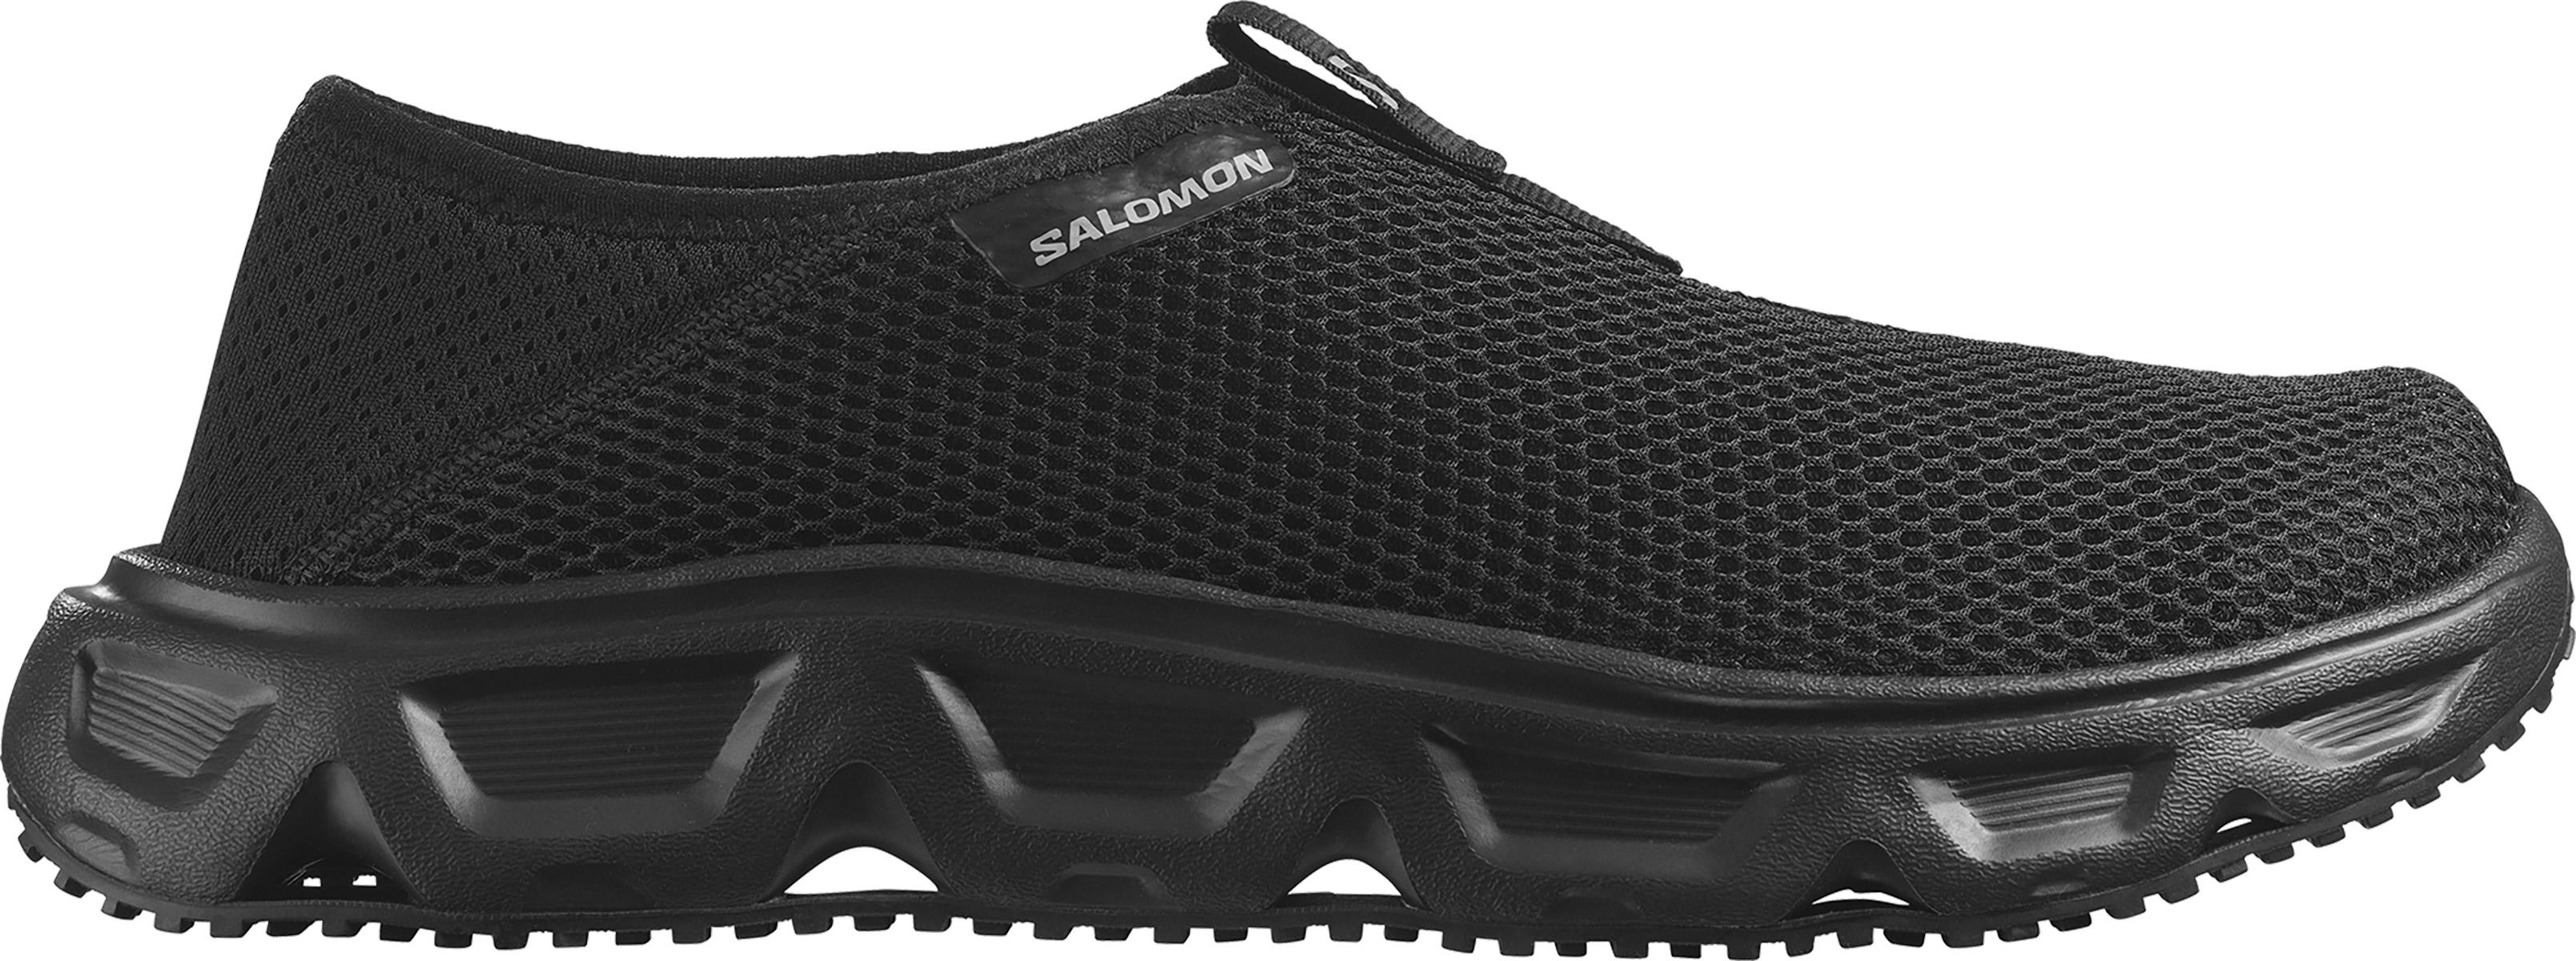 Salomon Reelax Moc 6.0 - Black/black/alloy